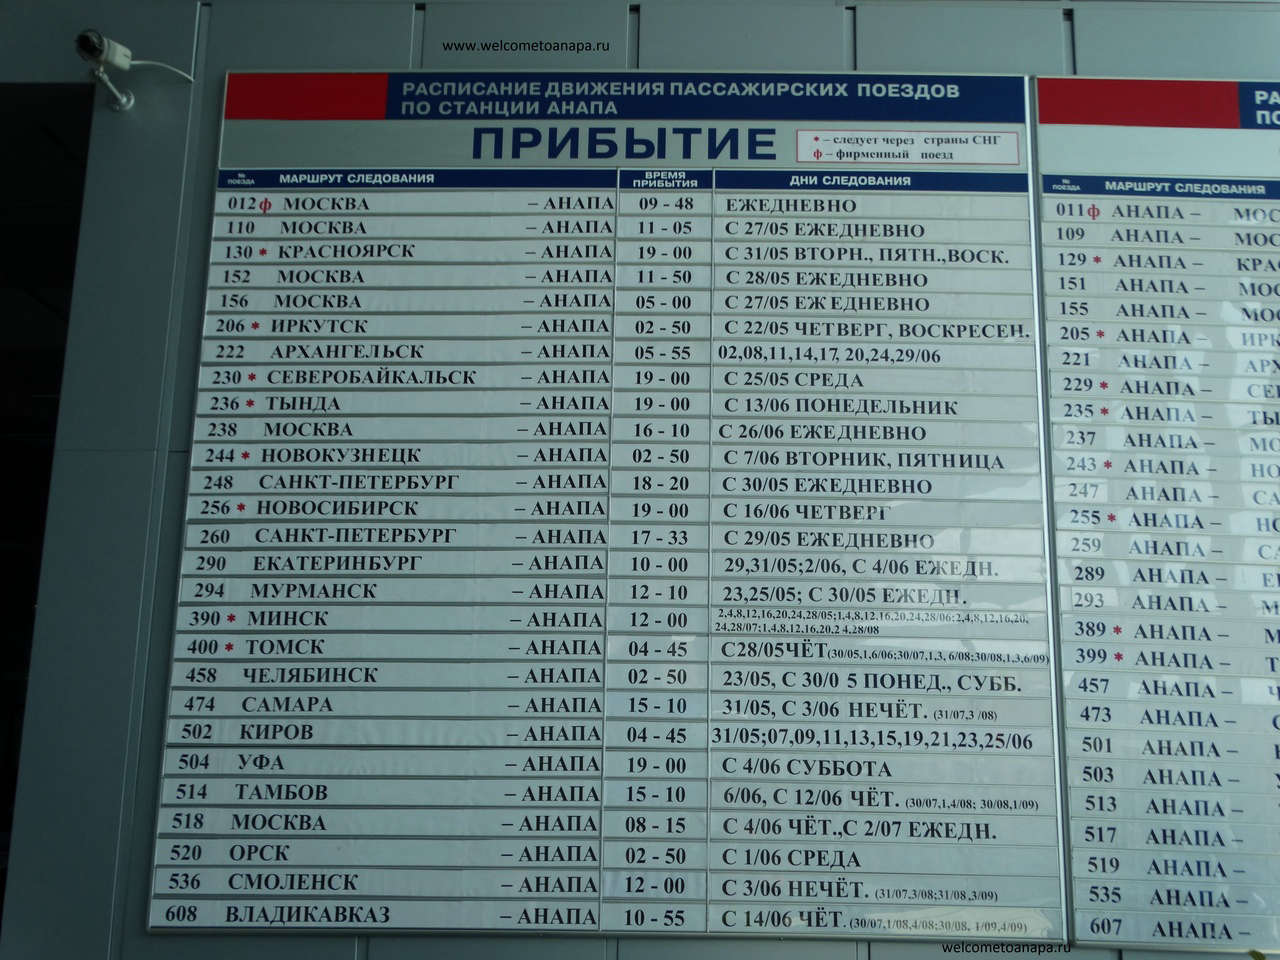 Расписание поездов Москва-Анапа